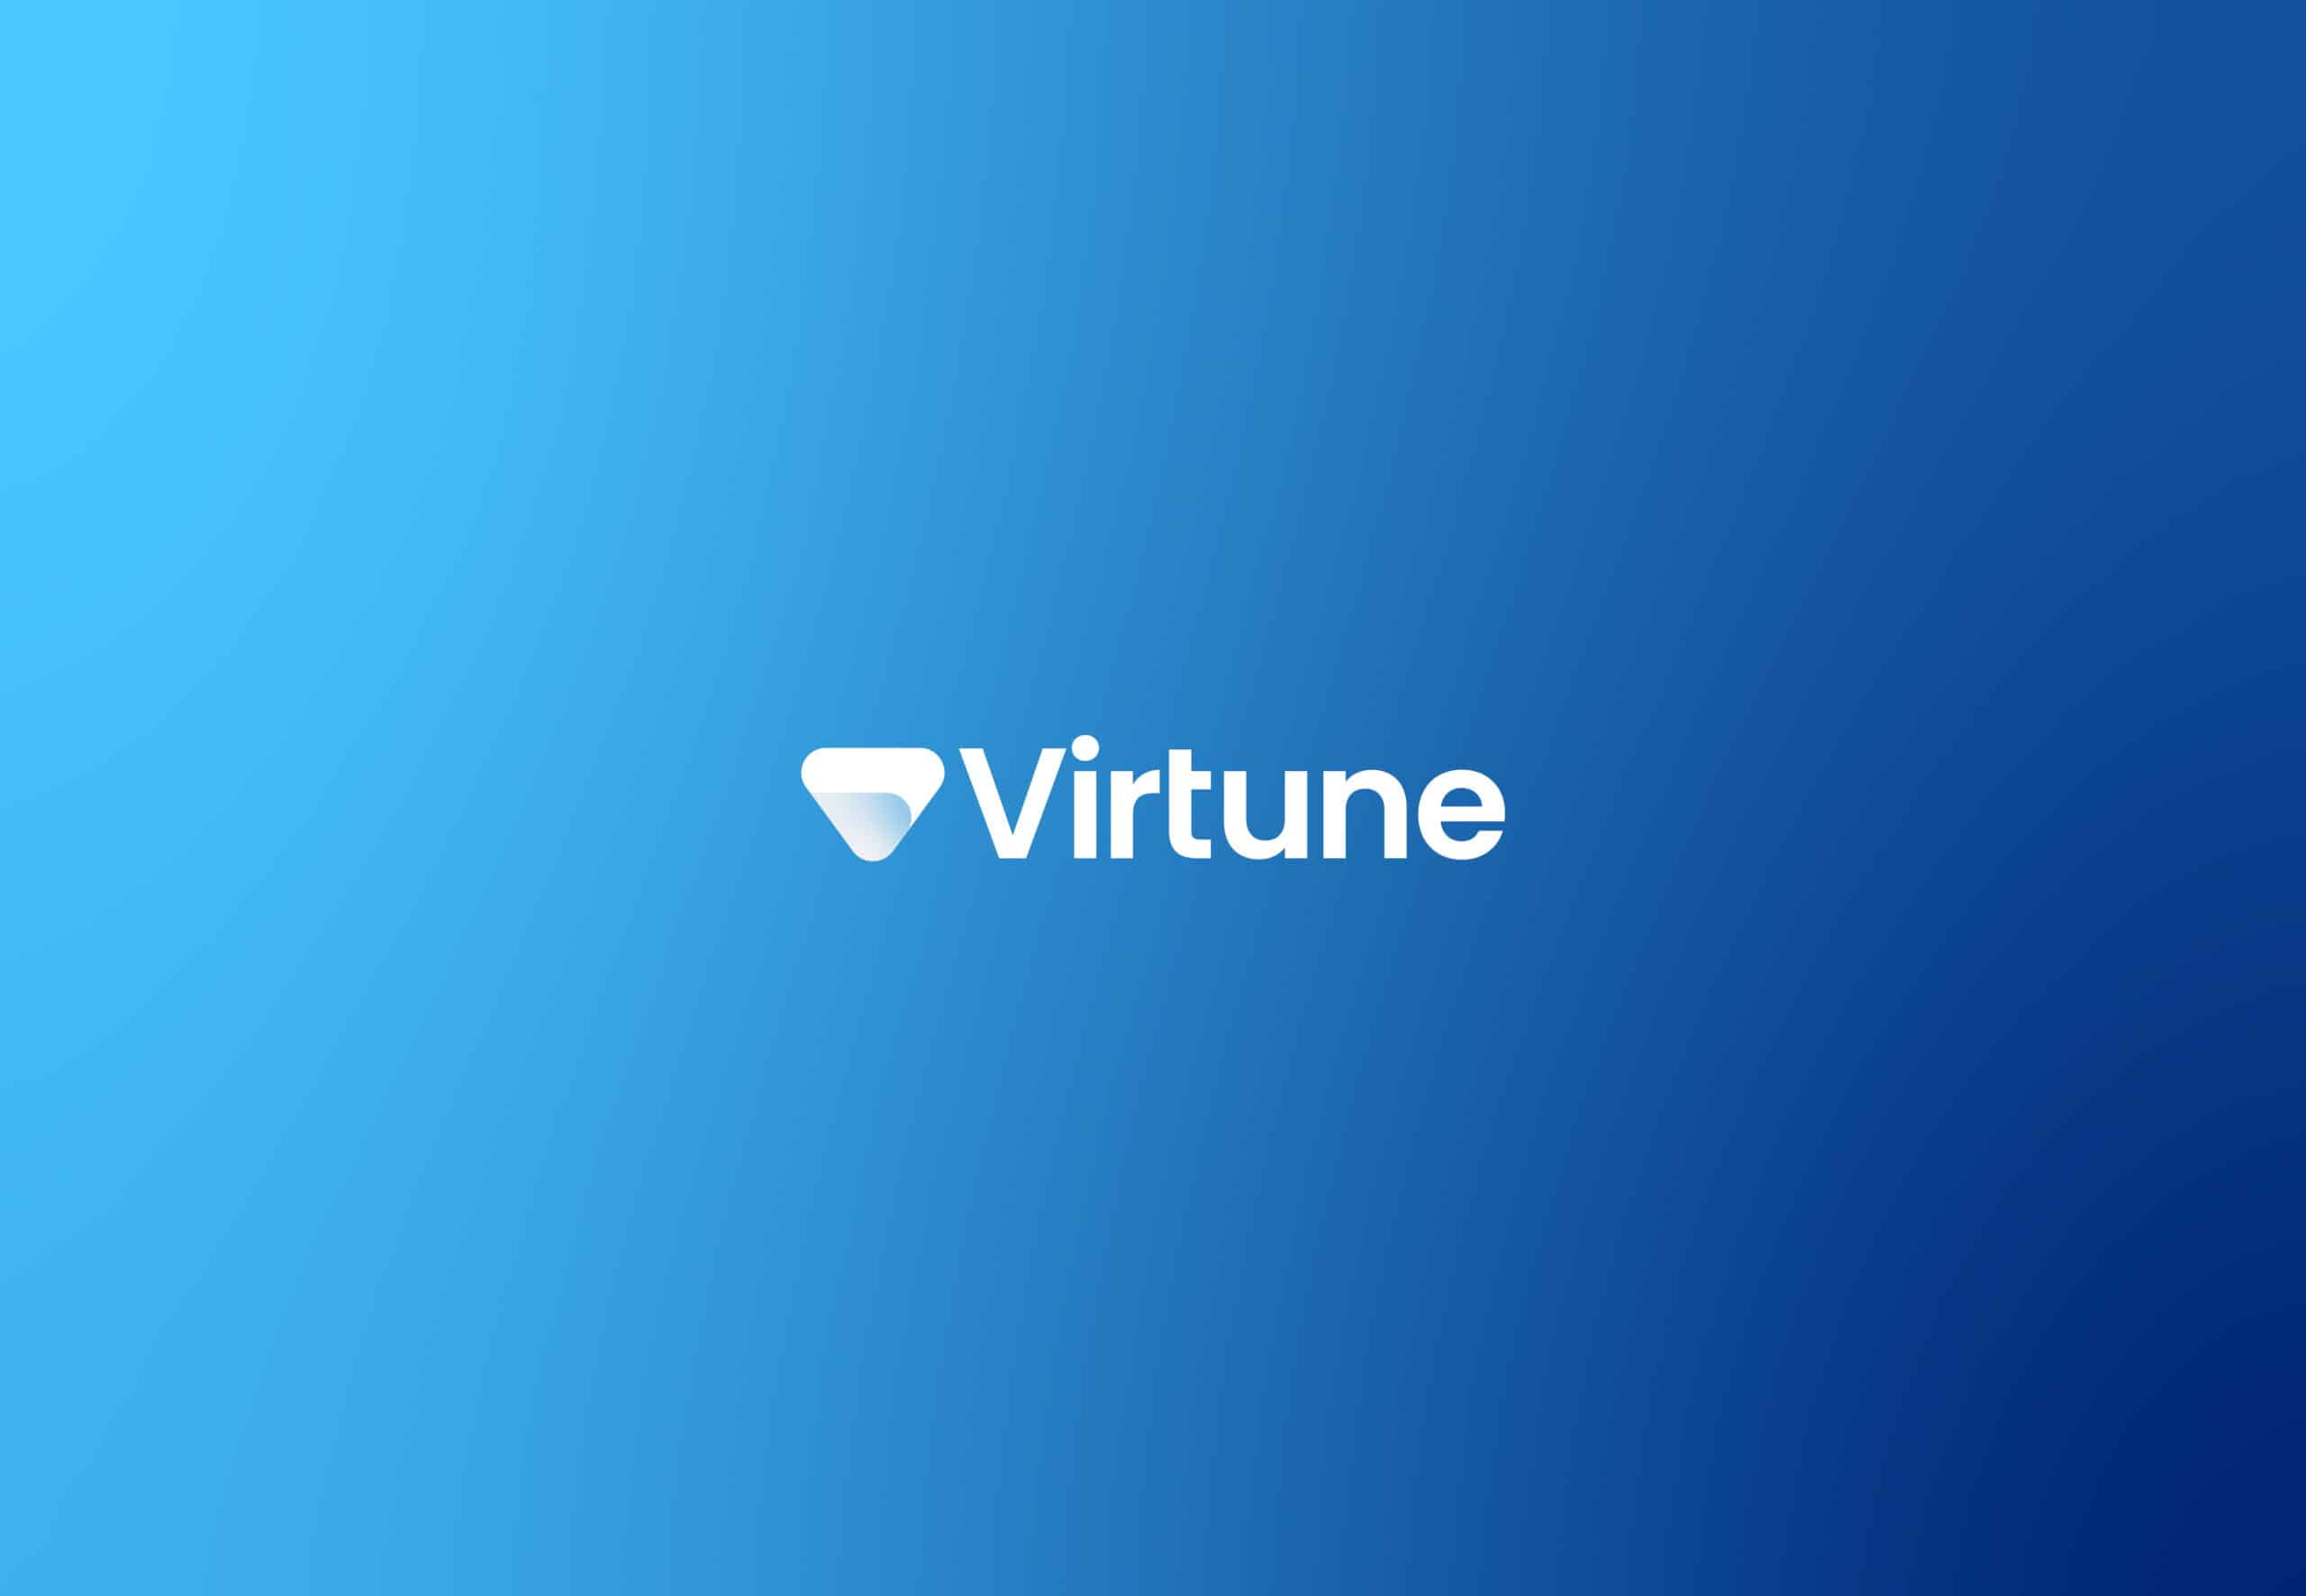 Virtune delar med sig av de senaste nyheterna kring kryptoregleringarna runt om i världen. Virtune erbjuder innovativa investeringsprodukter inom krypto genom beprövade och väletablerade finansiella instrument som handlas på Nasdaq Stockholm.